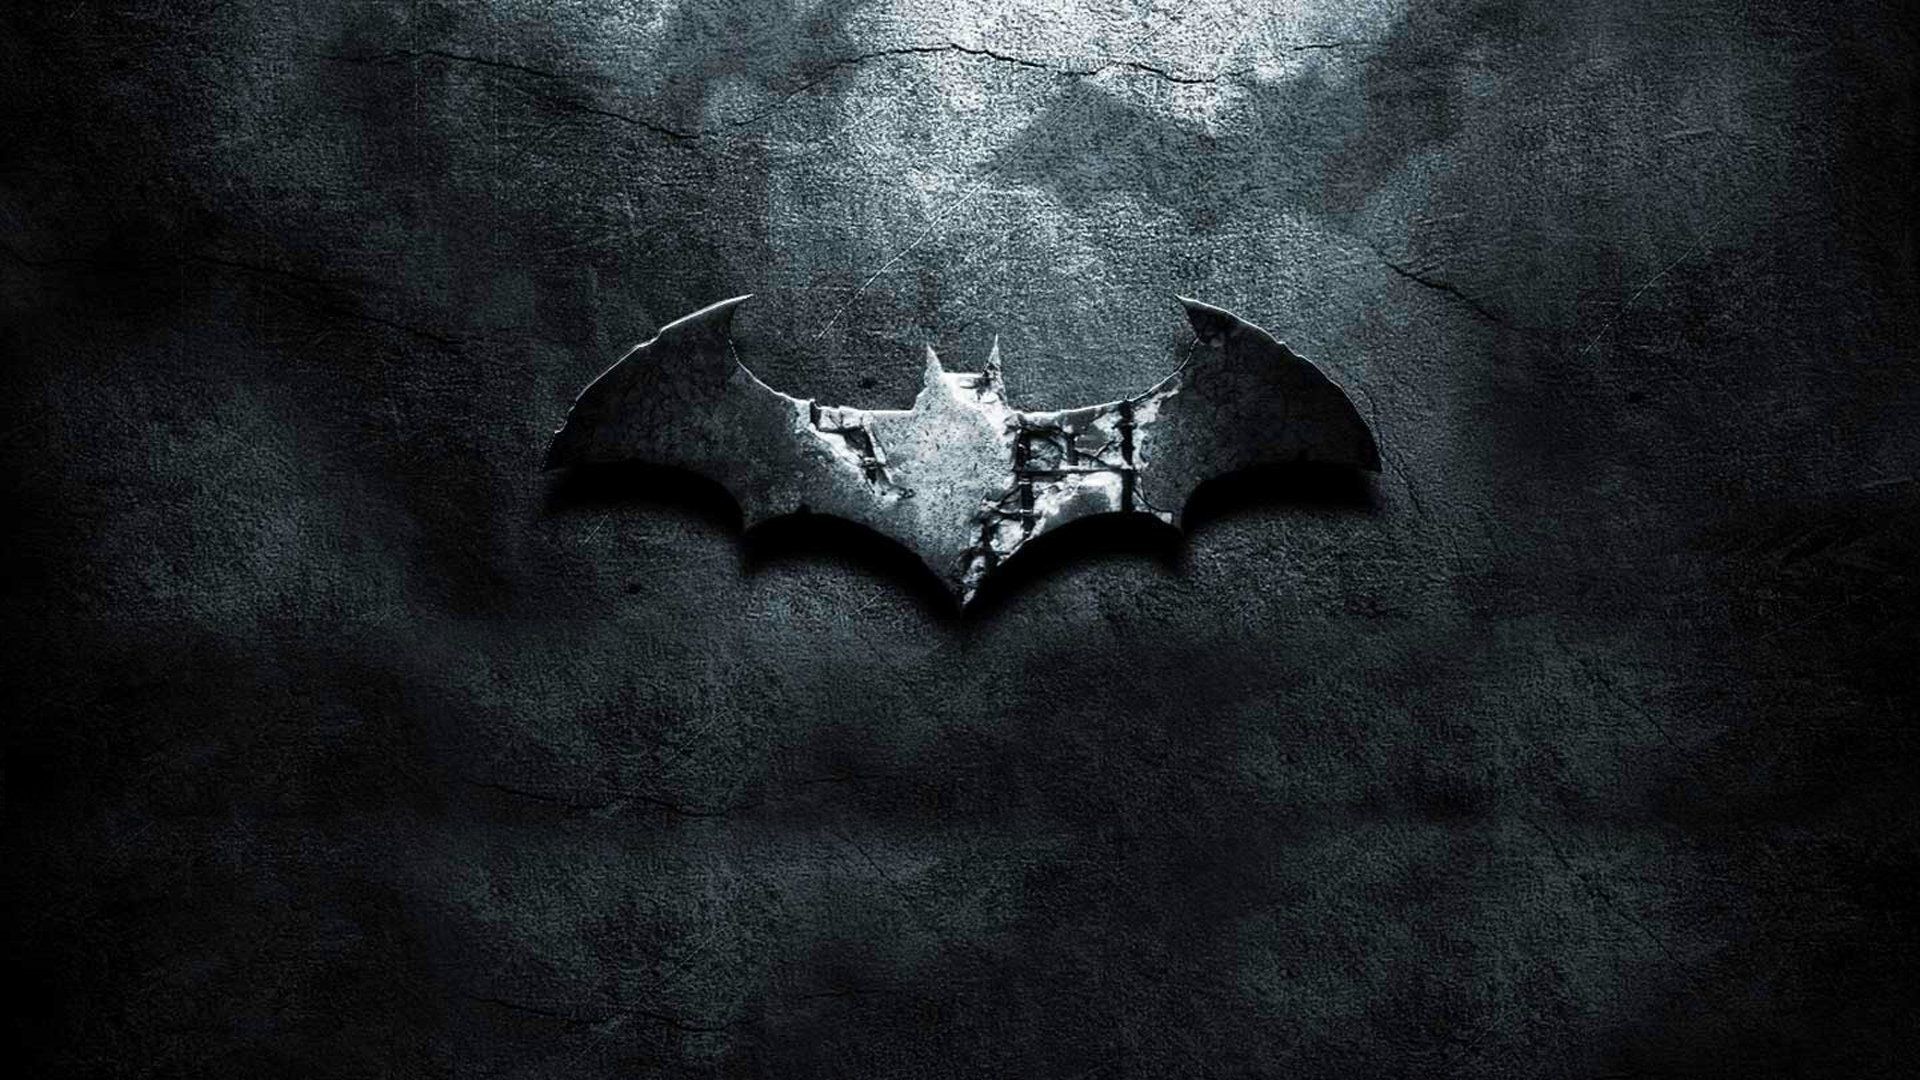 Hình nền Batman: Nếu bạn là fan của Batman thì chắc chắn không thể bỏ lỡ những hình nền Batman đầy mê hoặc và đẹp mắt này. Bạn sẽ thấy những tạo hình Only Batman có giá trị thẩm mĩ cao được thể hiện qua những hình nền HD, giúp ban có thể tận hưởng nhân vật huyền thoại này mọi lúc mọi nơi.